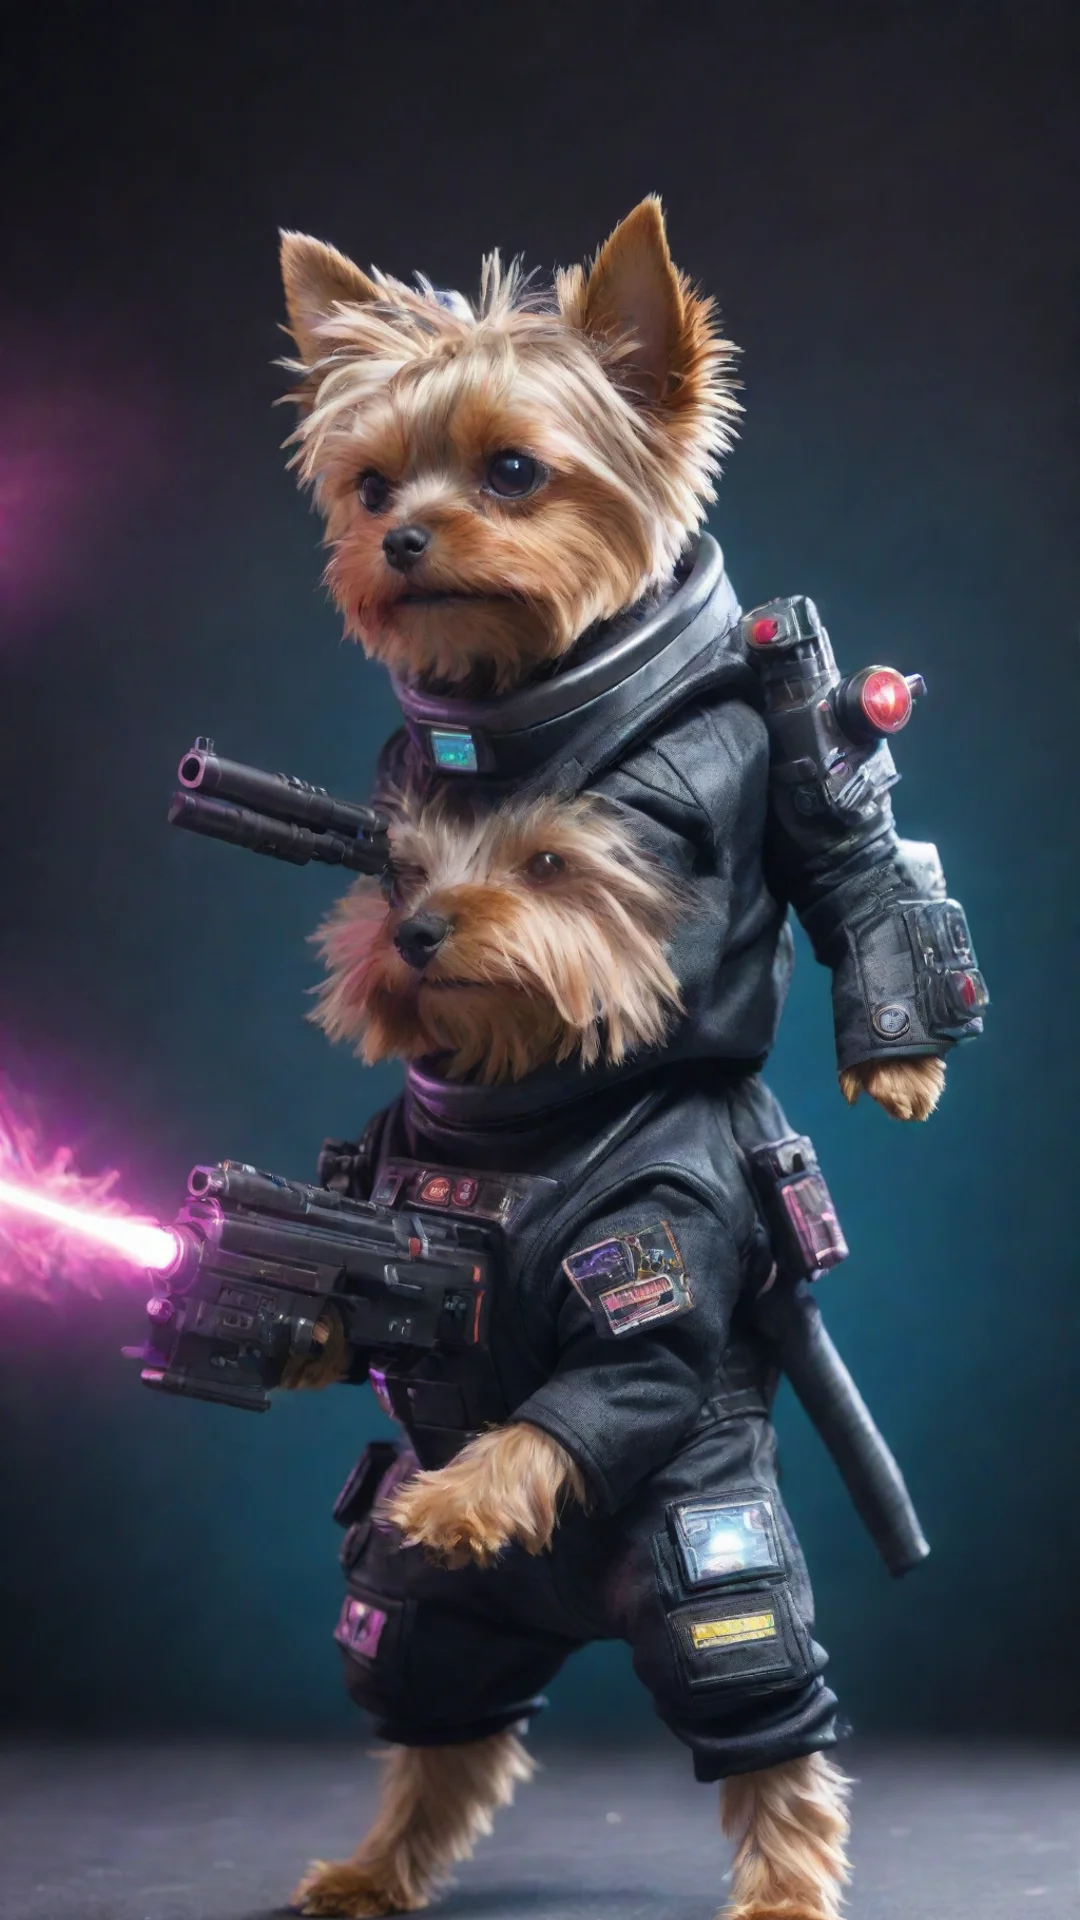 aitrending yorkshire terrier in a cyberpunk space suit firing a laser gun good looking fantastic 1 tall